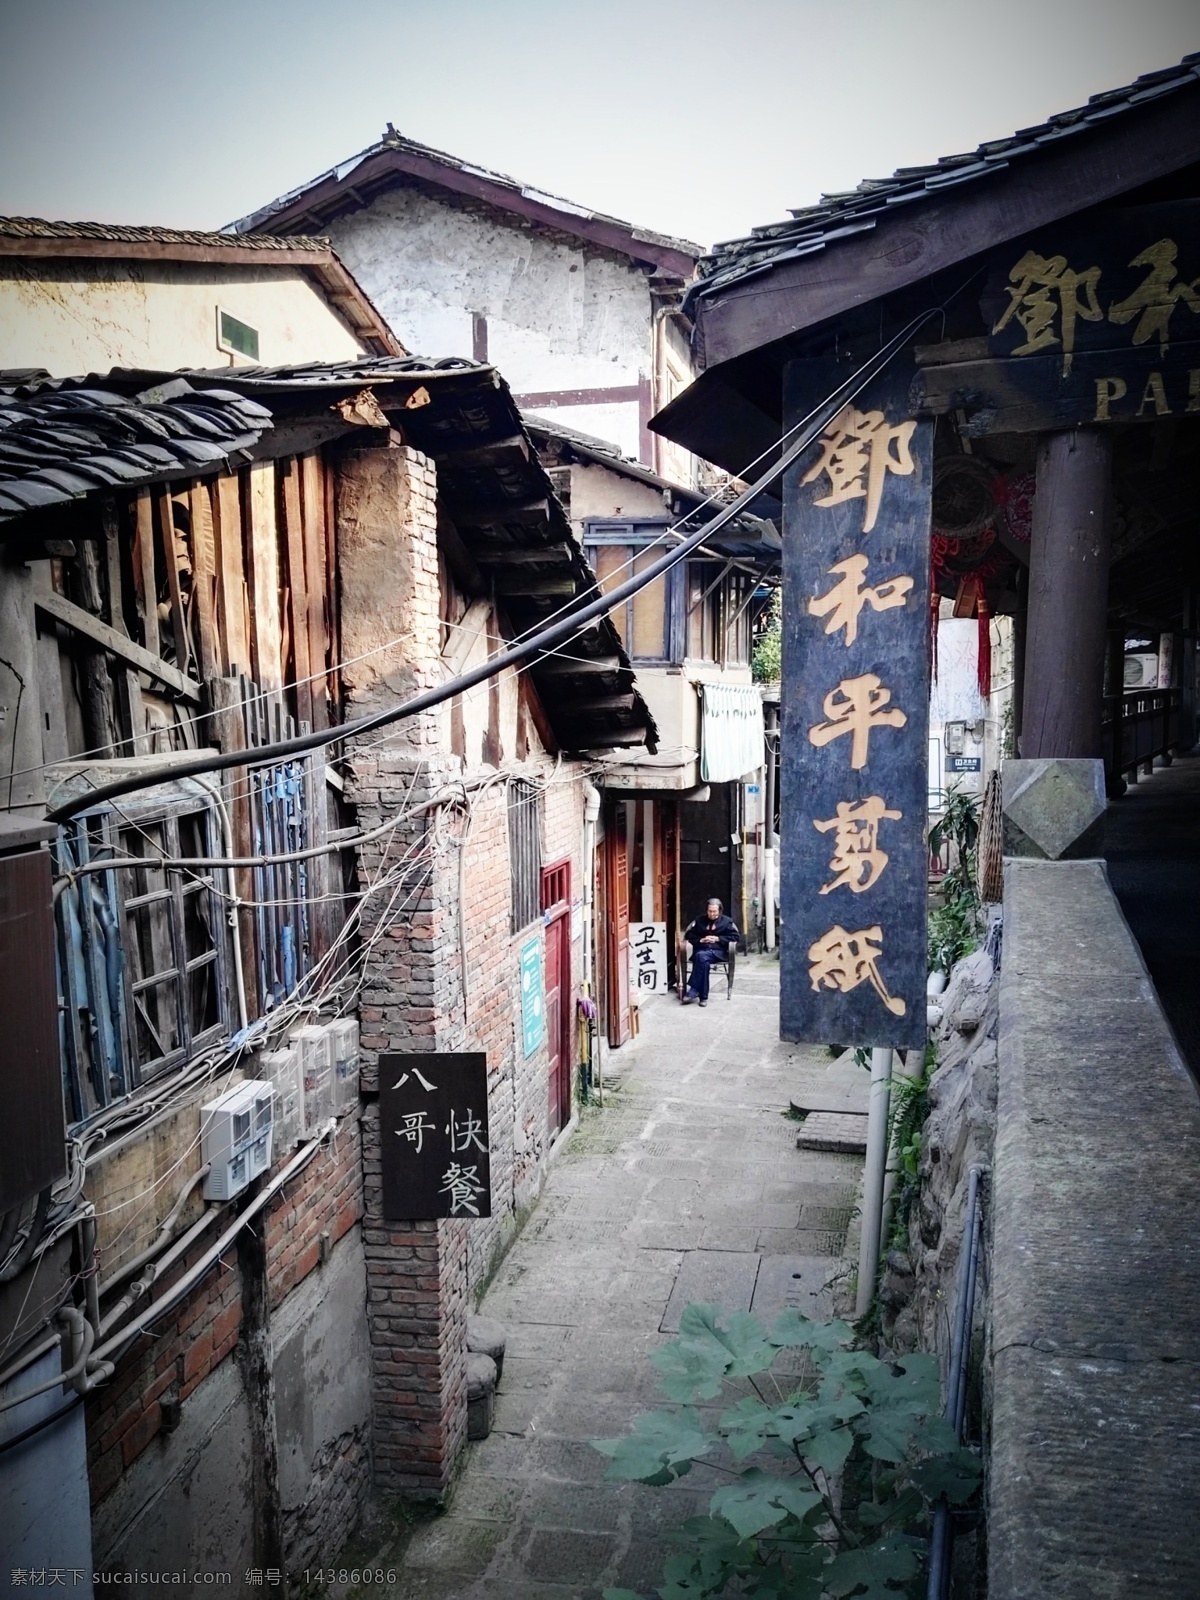 重庆 磁器口 安静的小街 剪纸店 女教师 旅游摄影 国内旅游